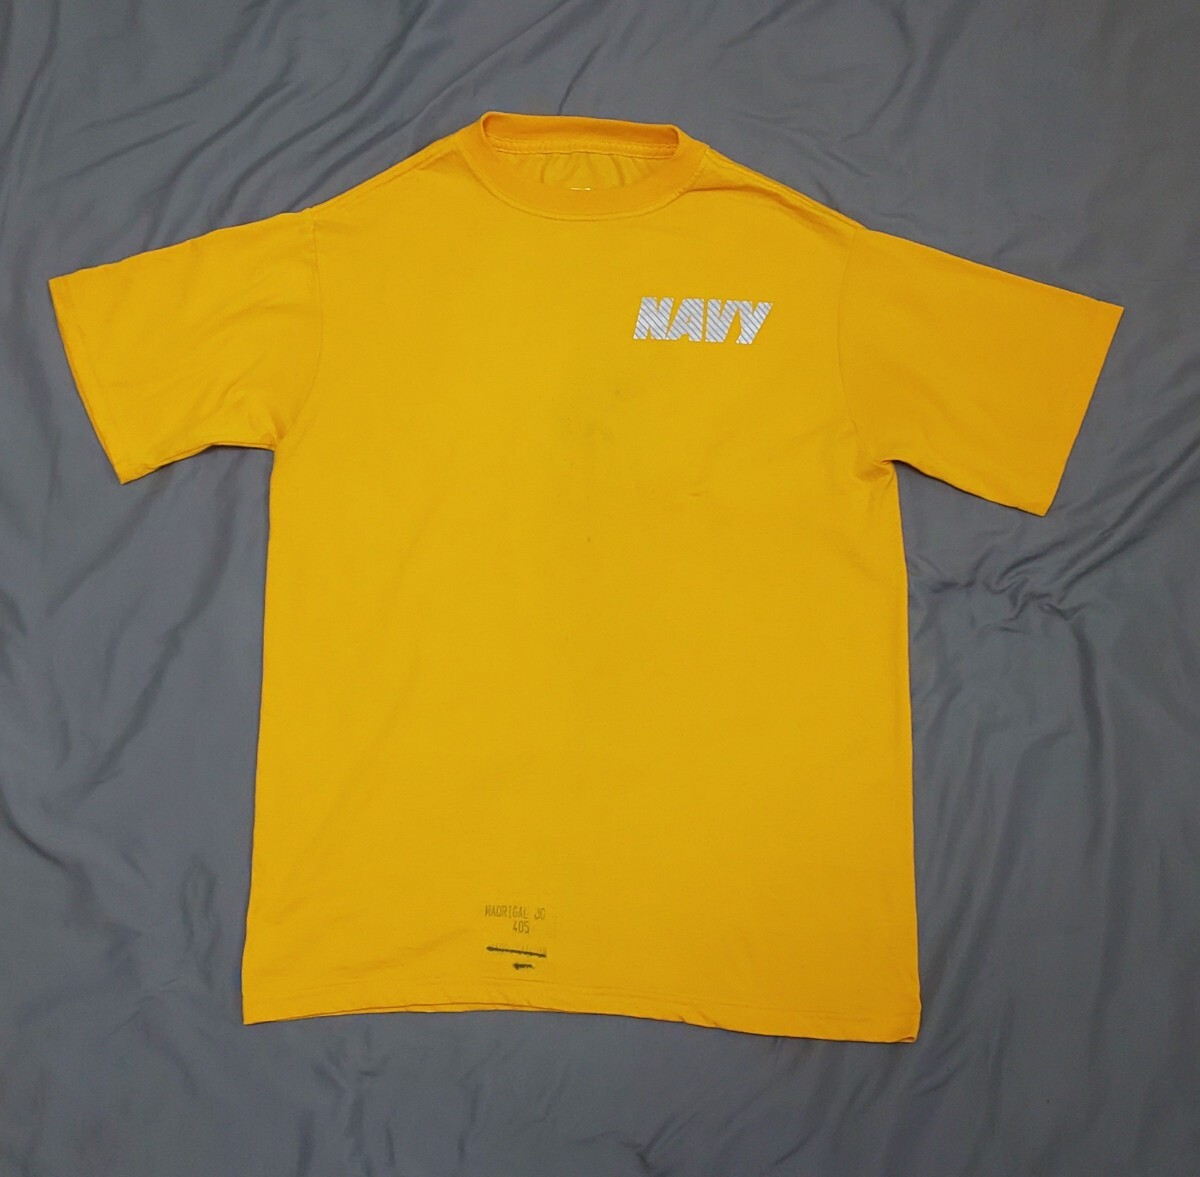 米海軍実物 NAVY PTシャツ 半袖Tシャツ サイズMの画像1